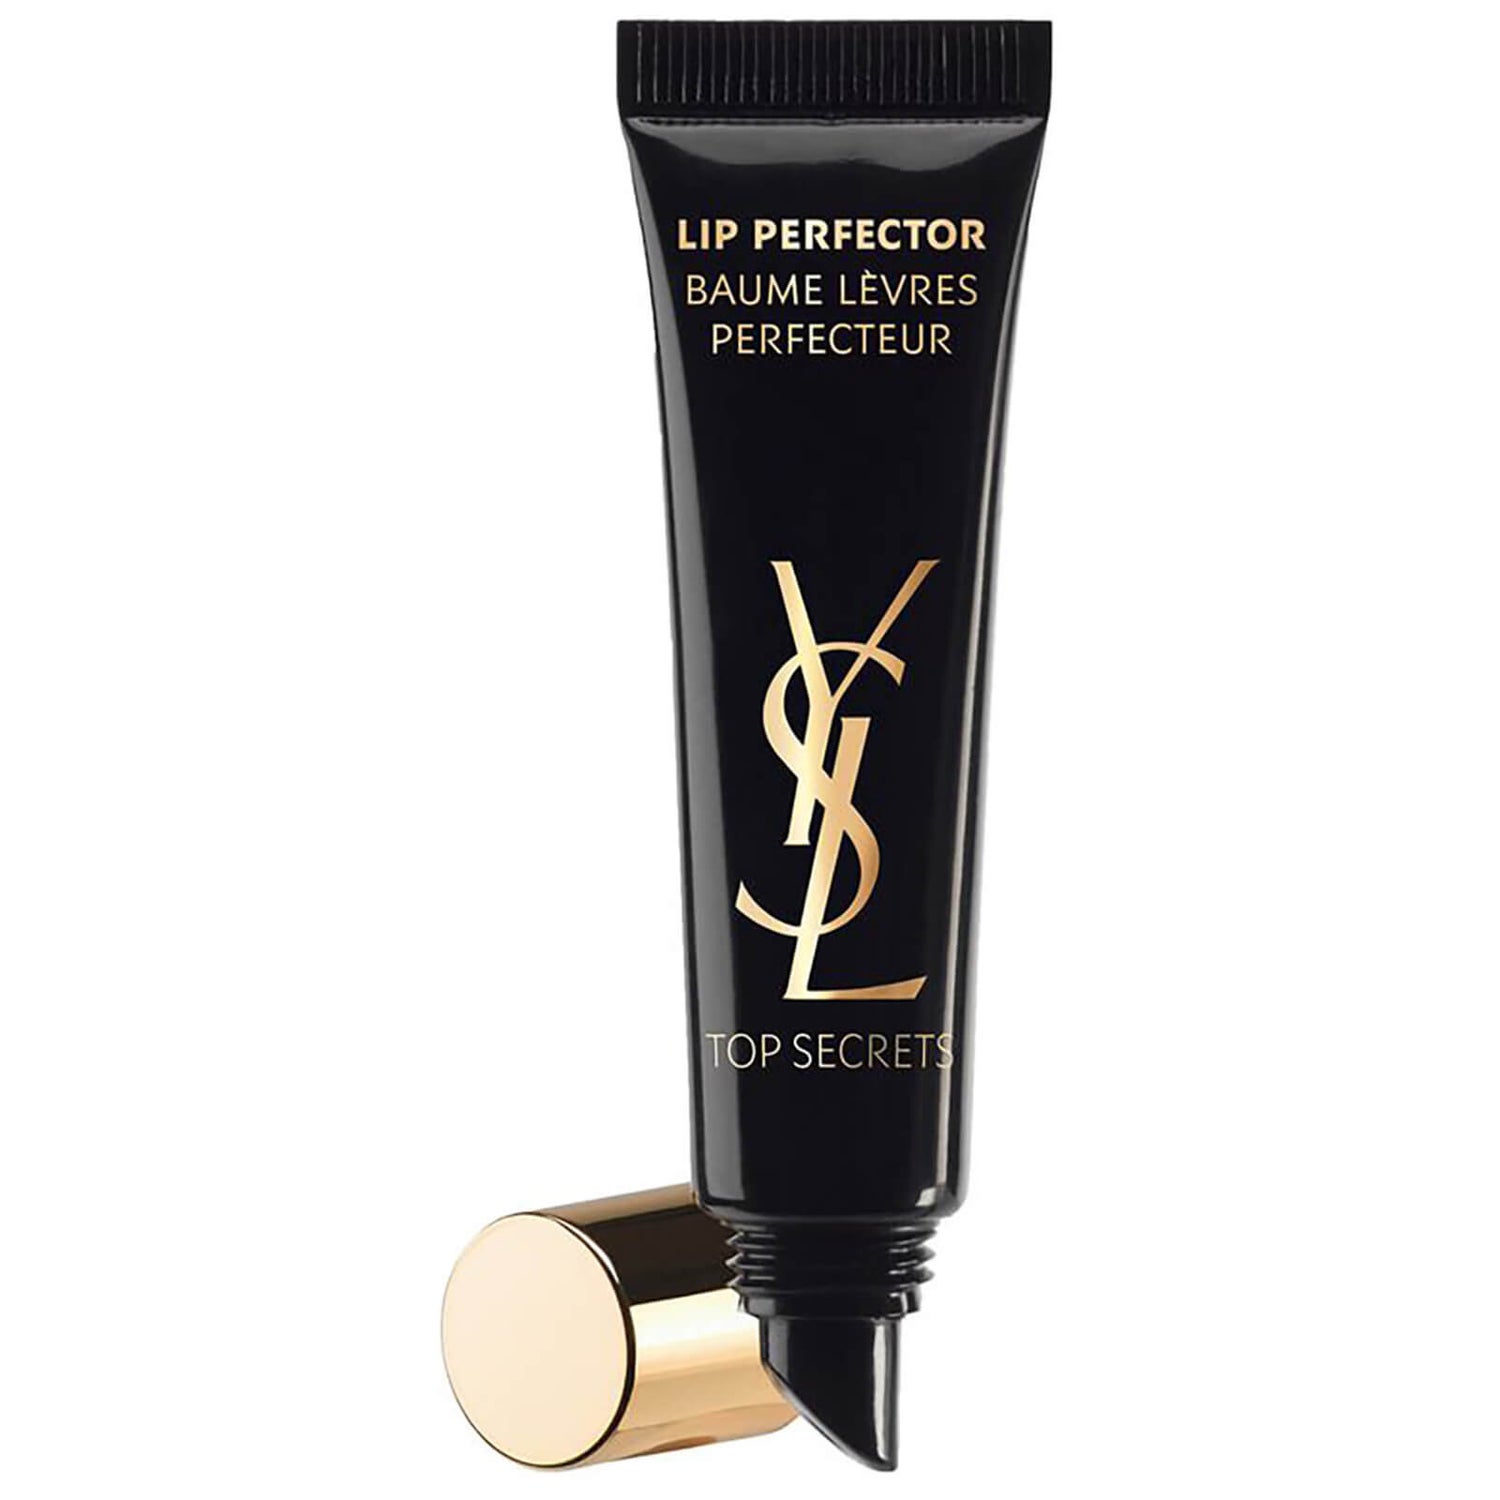 Perfeccionador de labios Top Secrets de Yves Saint Laurent 15 ml